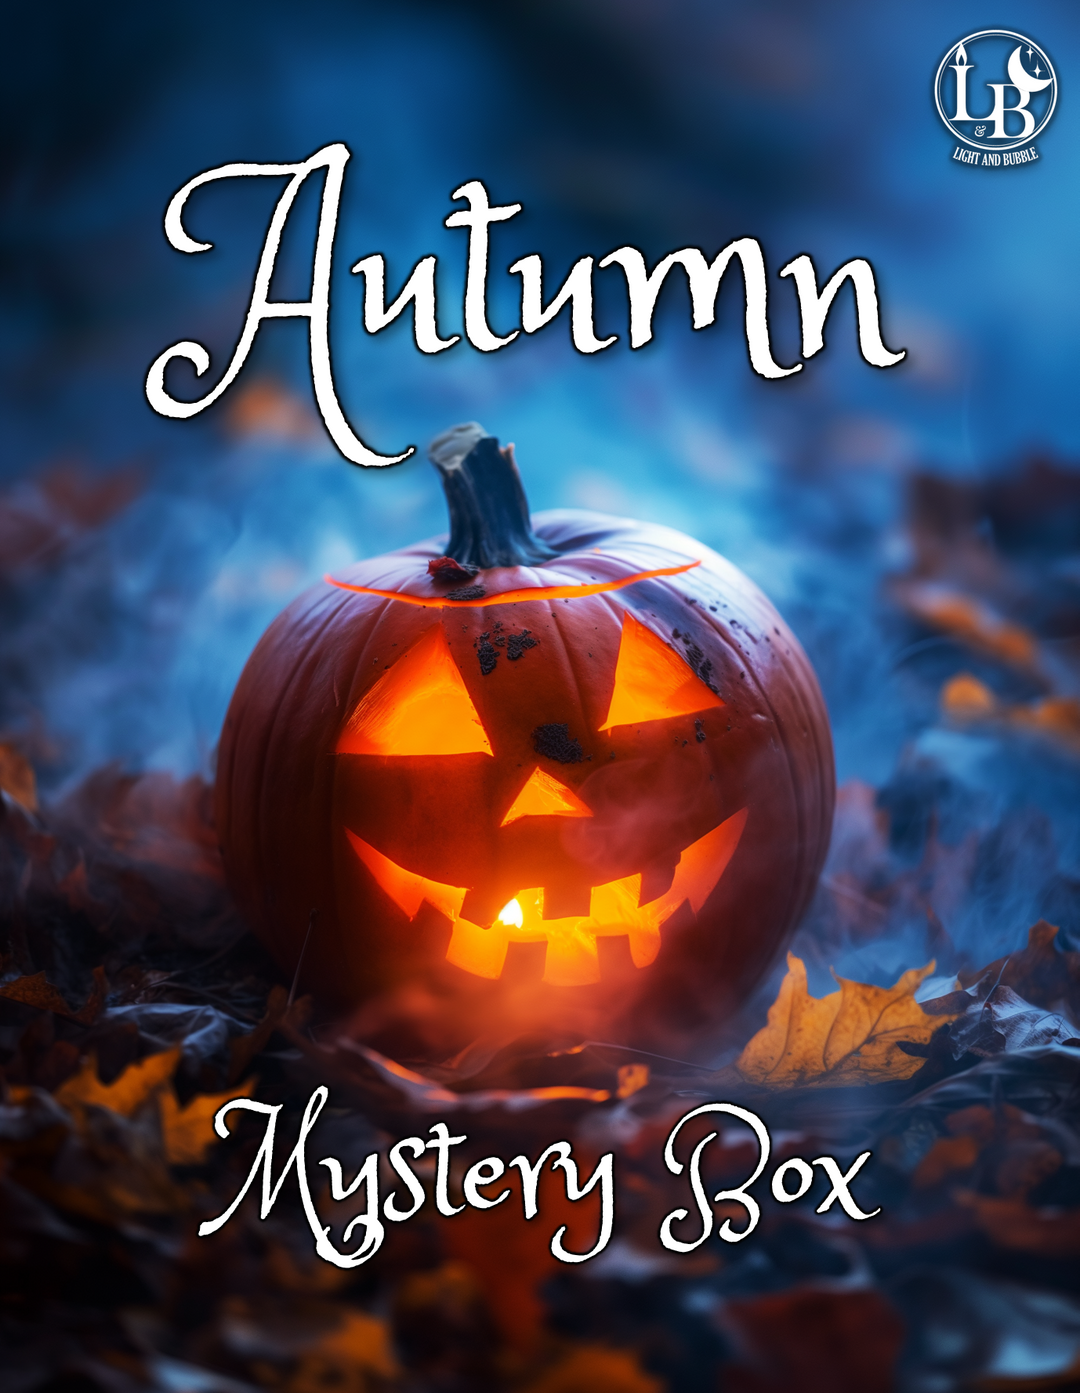 Autumn Mystery BoxCélébrez la magie des quatre saisons à la manière d'une sorcière moderne avec notre Mystery Box. La Mystery Box c'est une box trimestrielle dans le thème de chaque saison disponible en pré-commande unique et en abonnement. Chaque box com